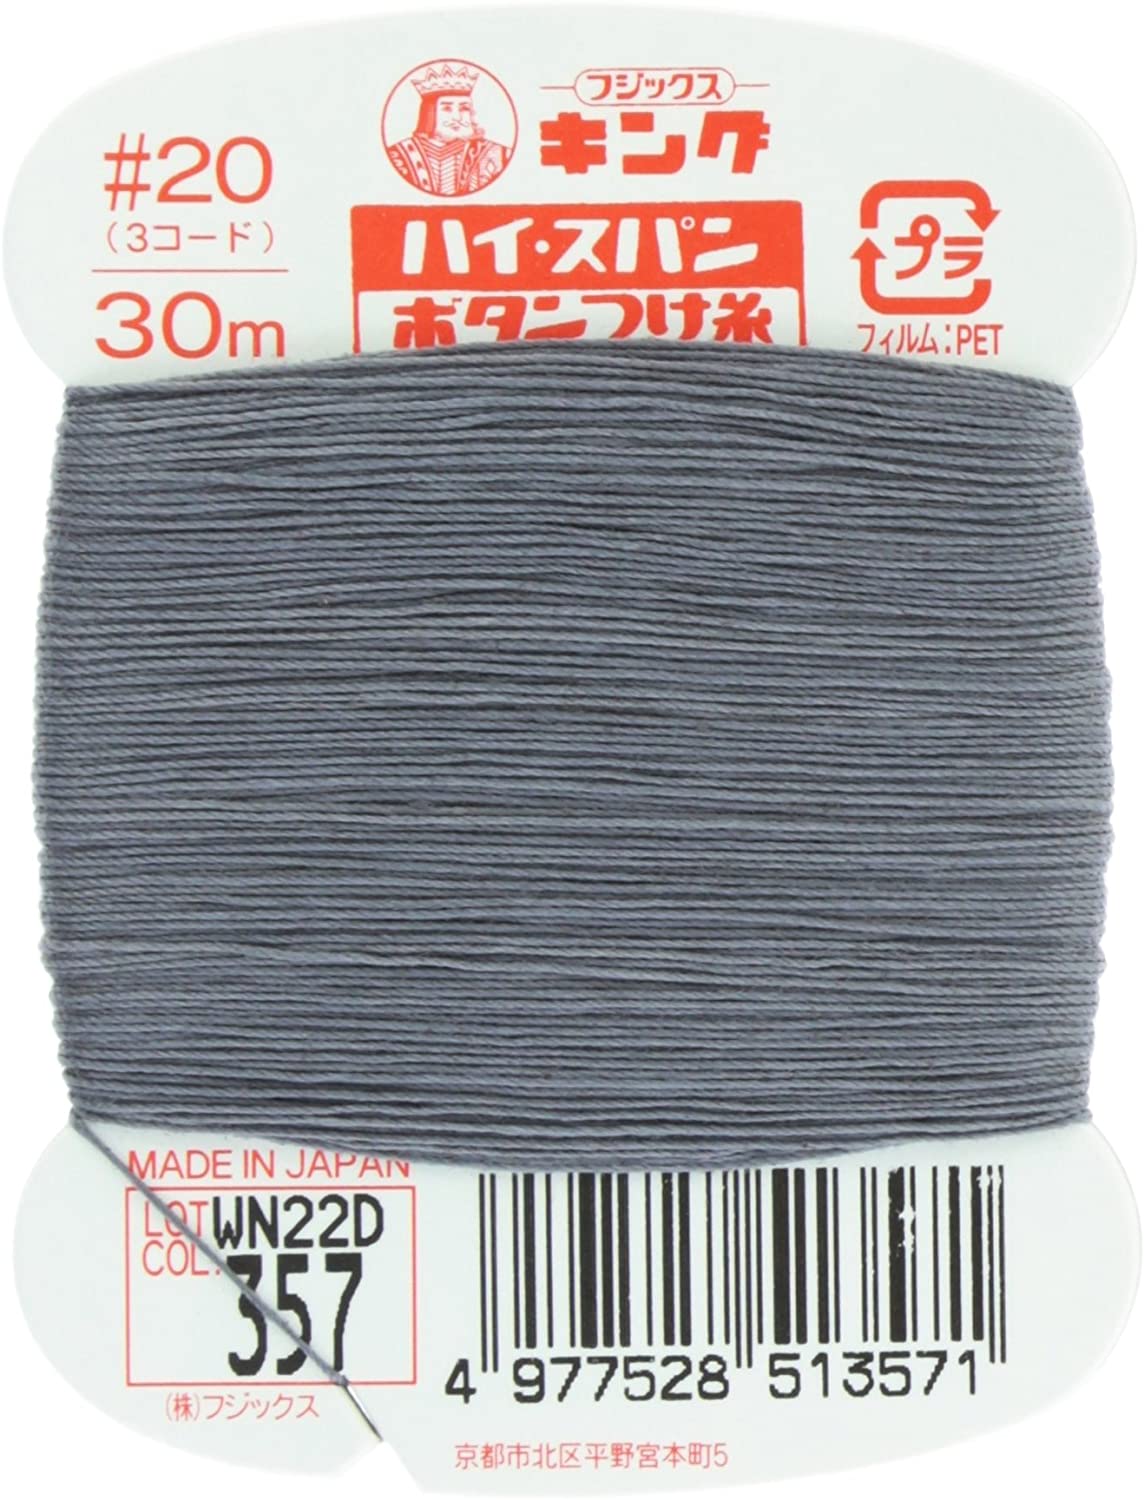 FK51-357 ハイスパンボタンつけ糸 #20 30m巻 (枚)